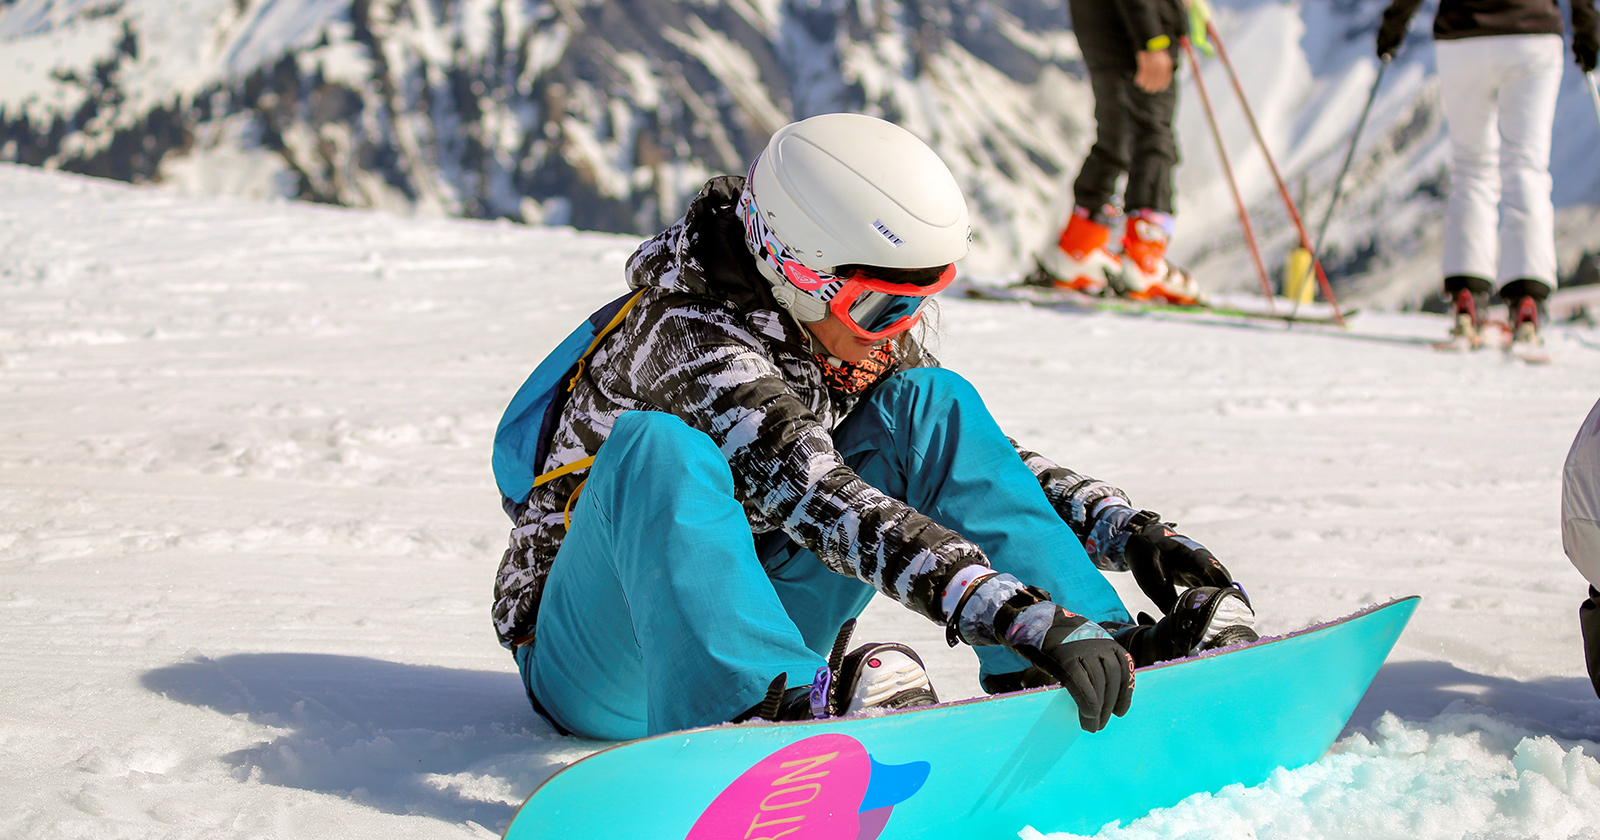 camber vs rocker snowboards